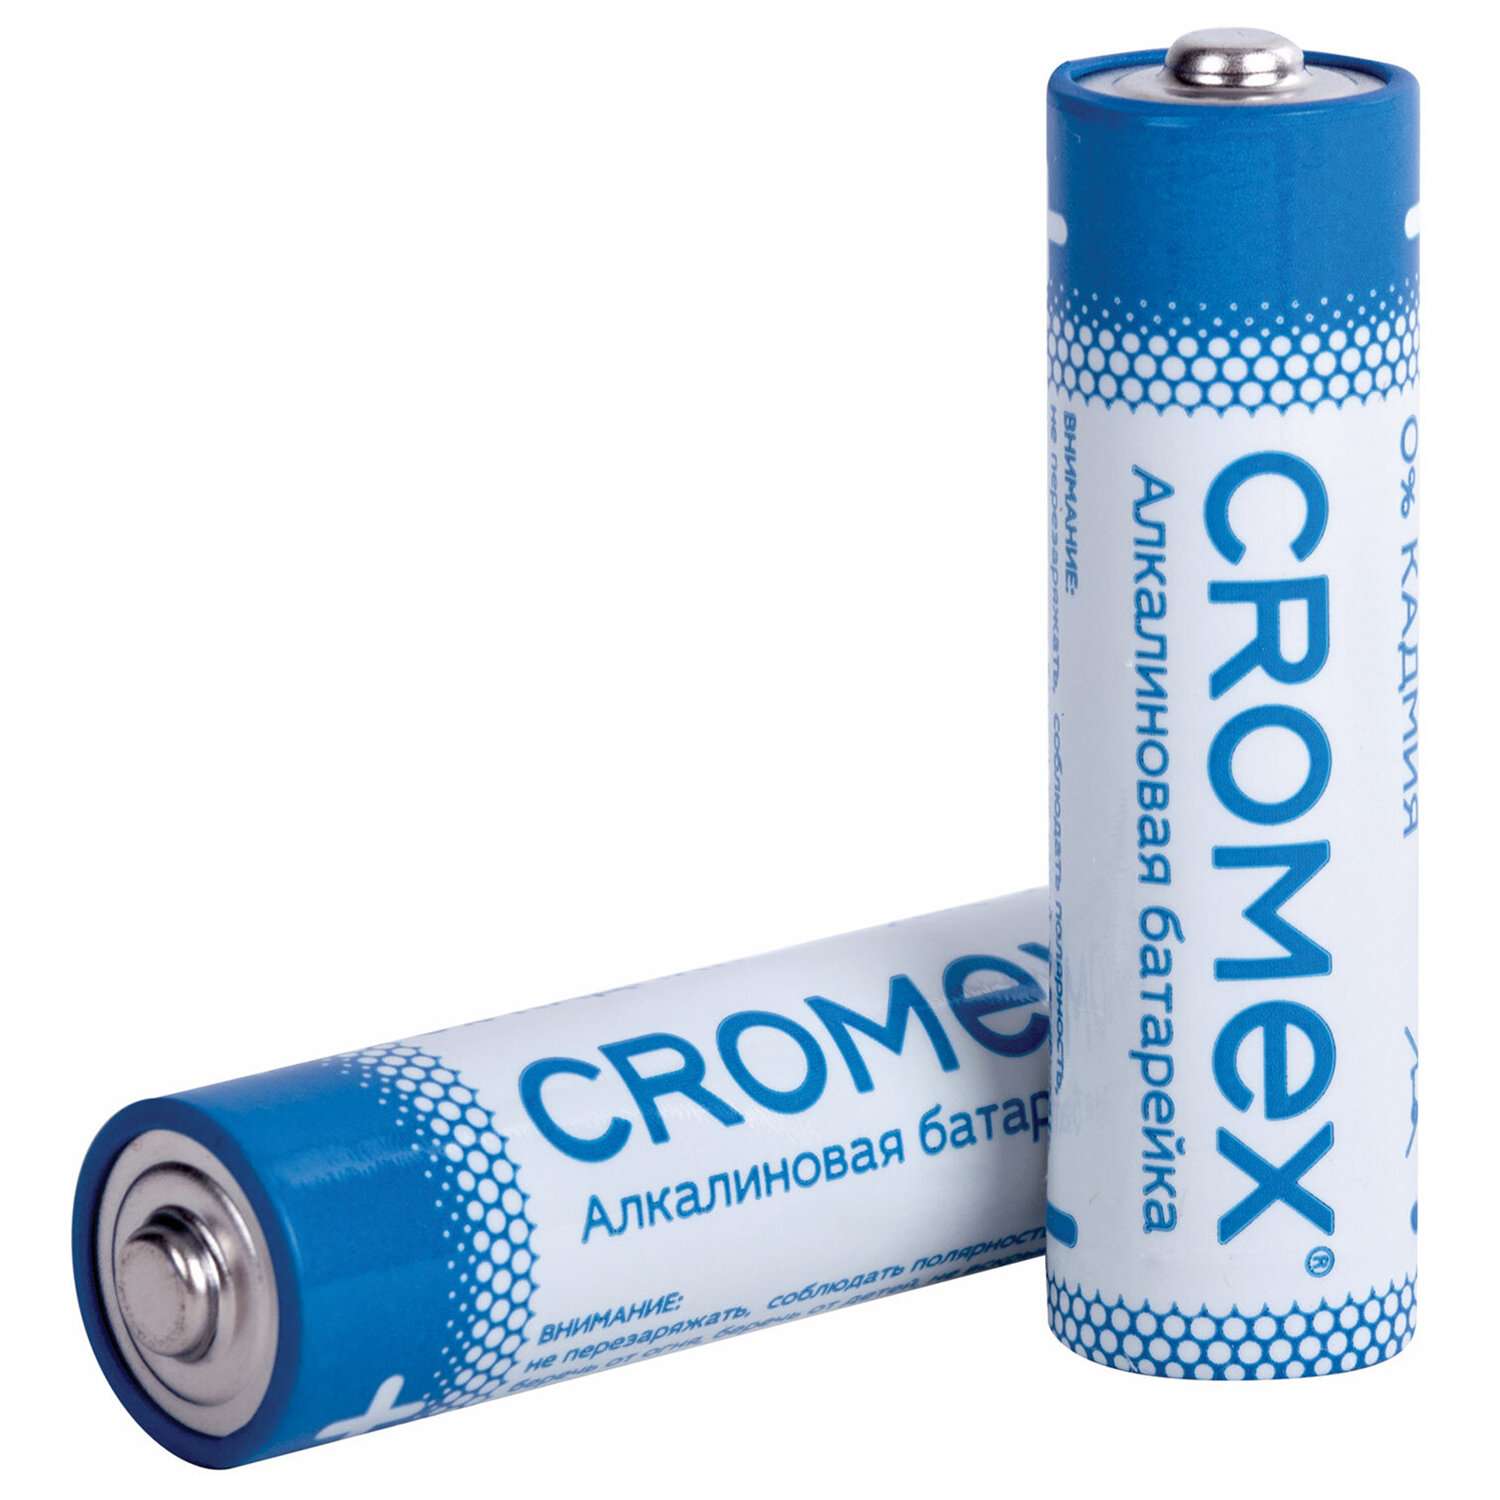 Батарейки алкалиновые CROMEX пальчиковые AA набор 11 штук для весов часов фонарика - фото 5